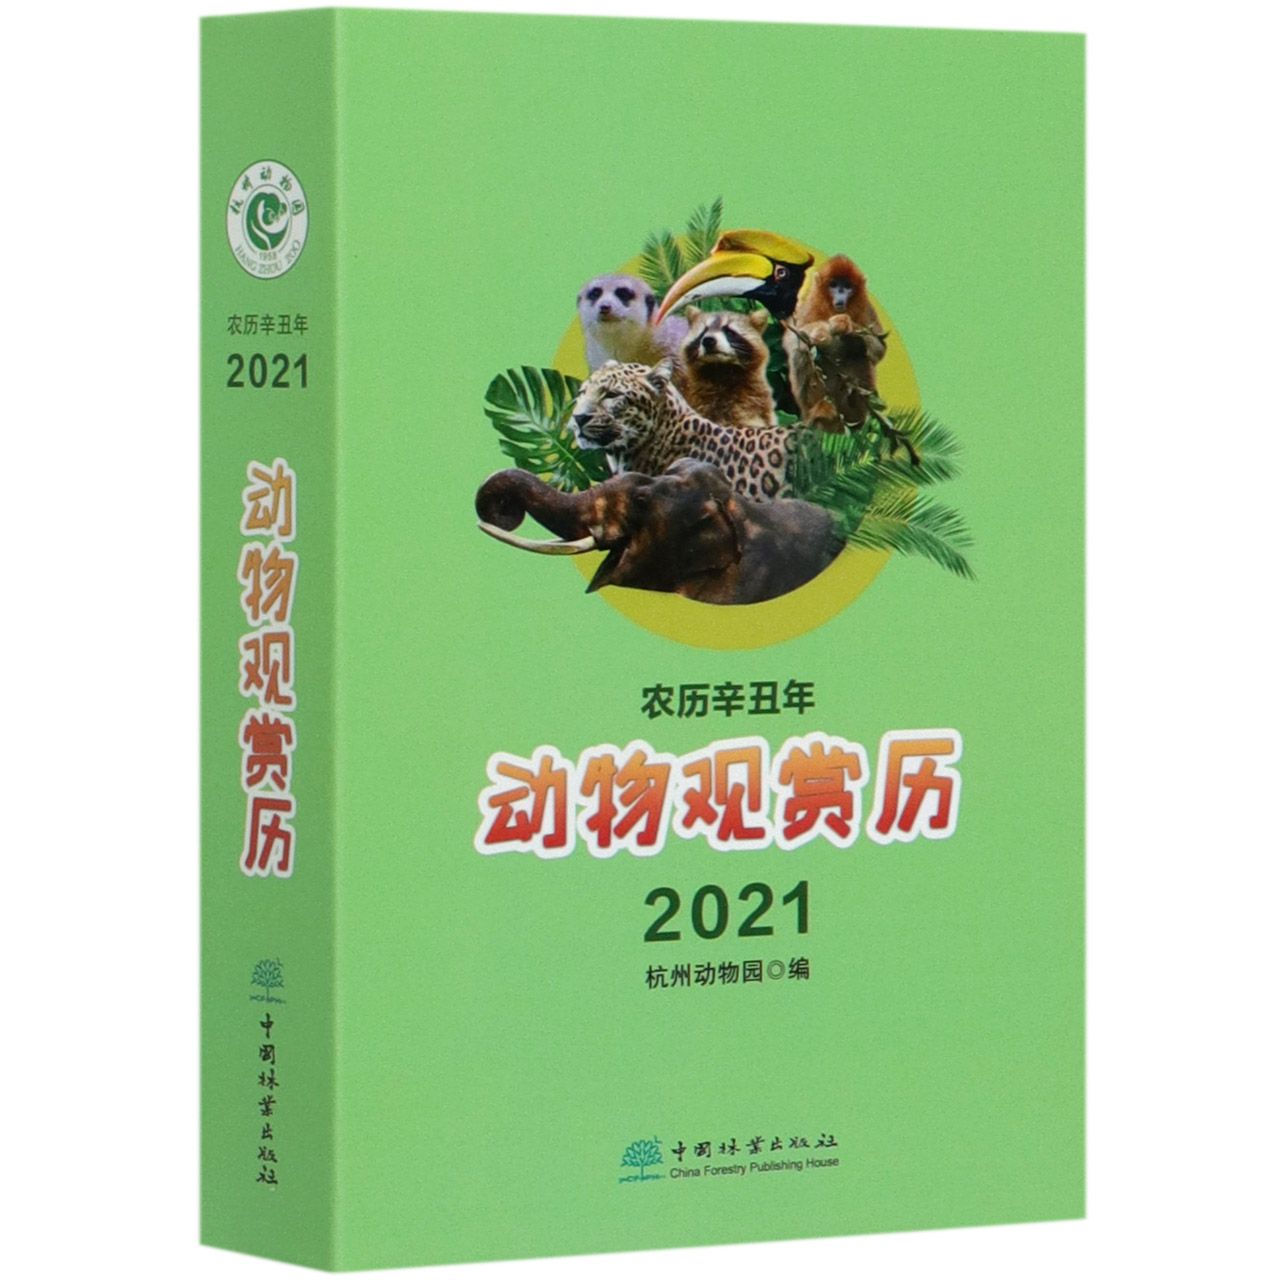 动物观赏历2021 杭州动物园编 农历辛丑年0780 中国林业出版社